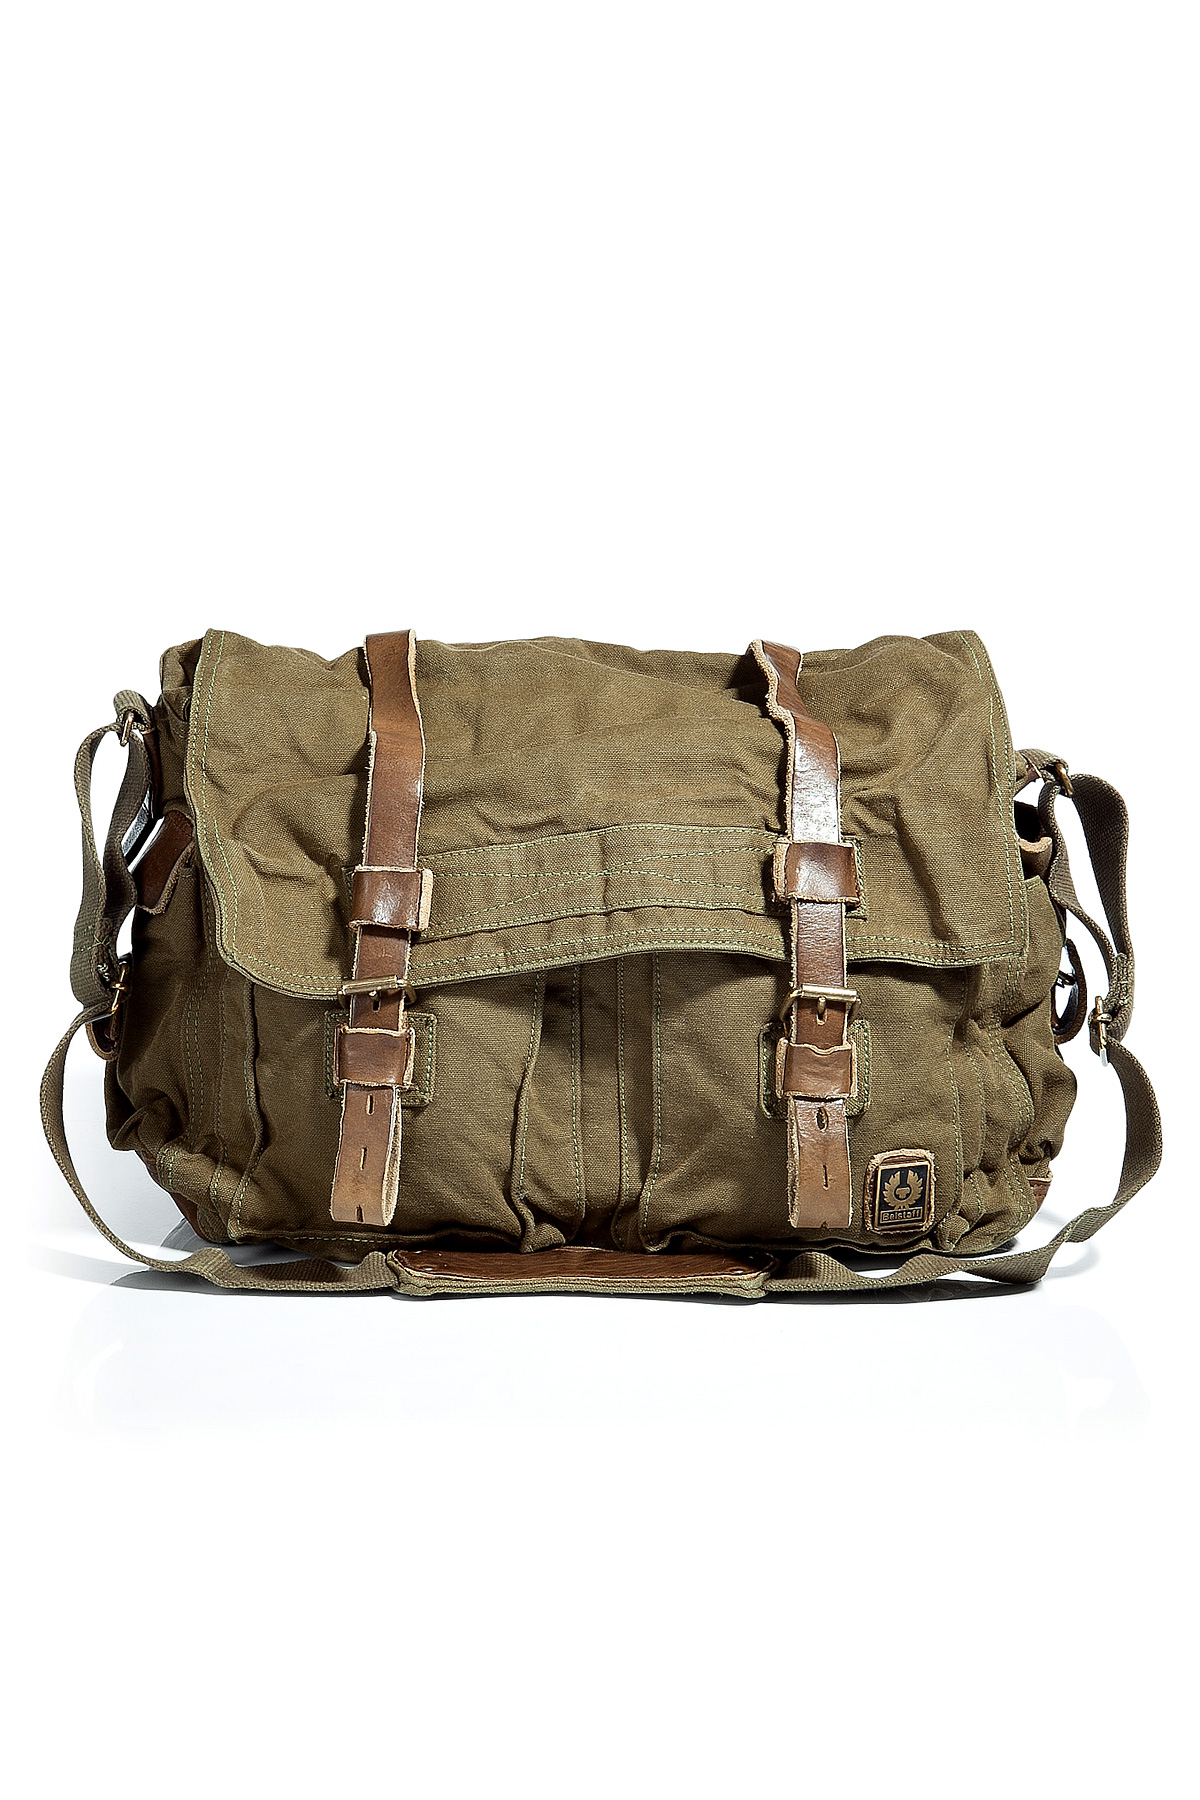 Belstaff Military Green Large Shoulder Bag 554 in Khaki for Men (green ...